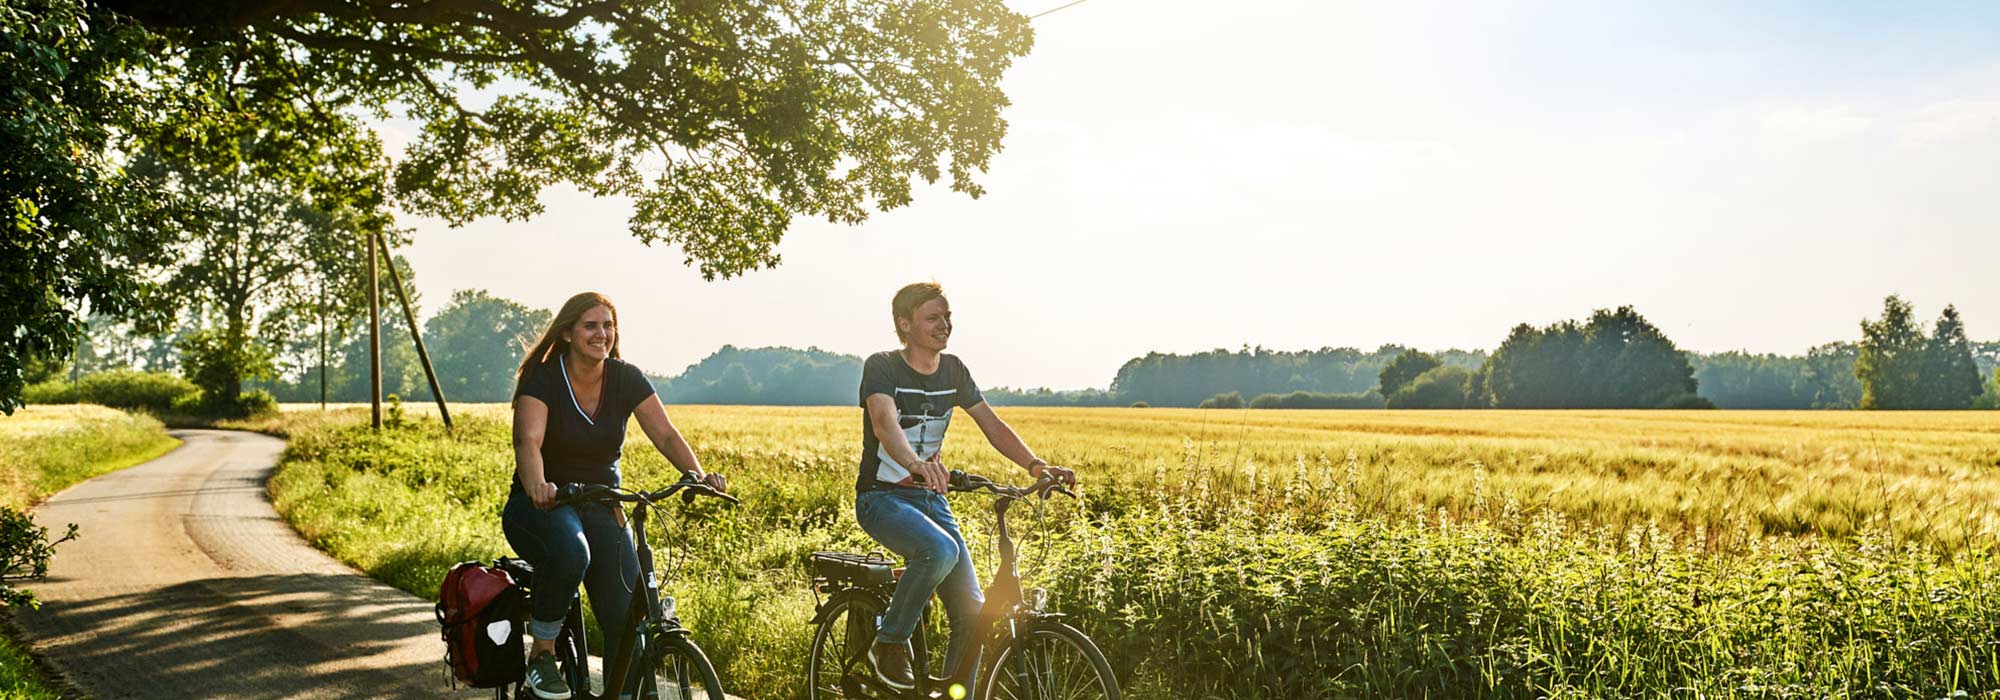 Ein Mann und eine Frau fahren mit dem Rad bei sommerlichem Wetter einen Weg zwischen Wiesen und Feldern